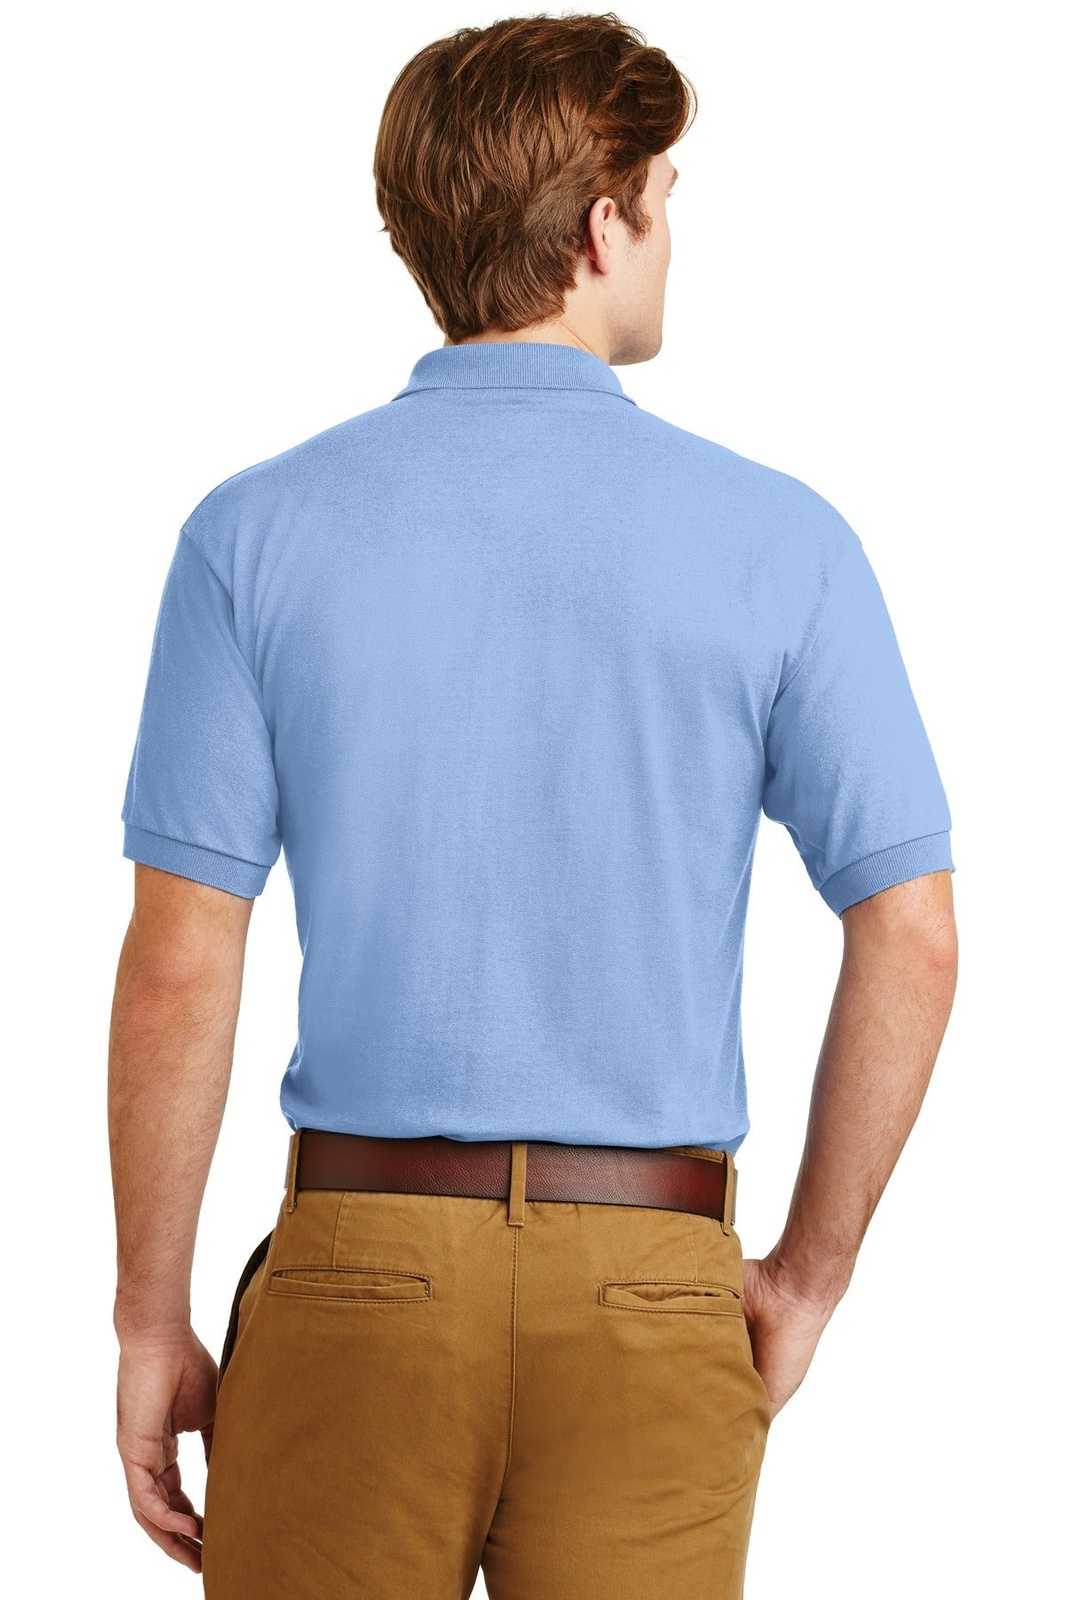 Gildan 8800 Dryblend 6-Ounce Jersey Knit Sport Shirt - Light Blue - HIT a Double